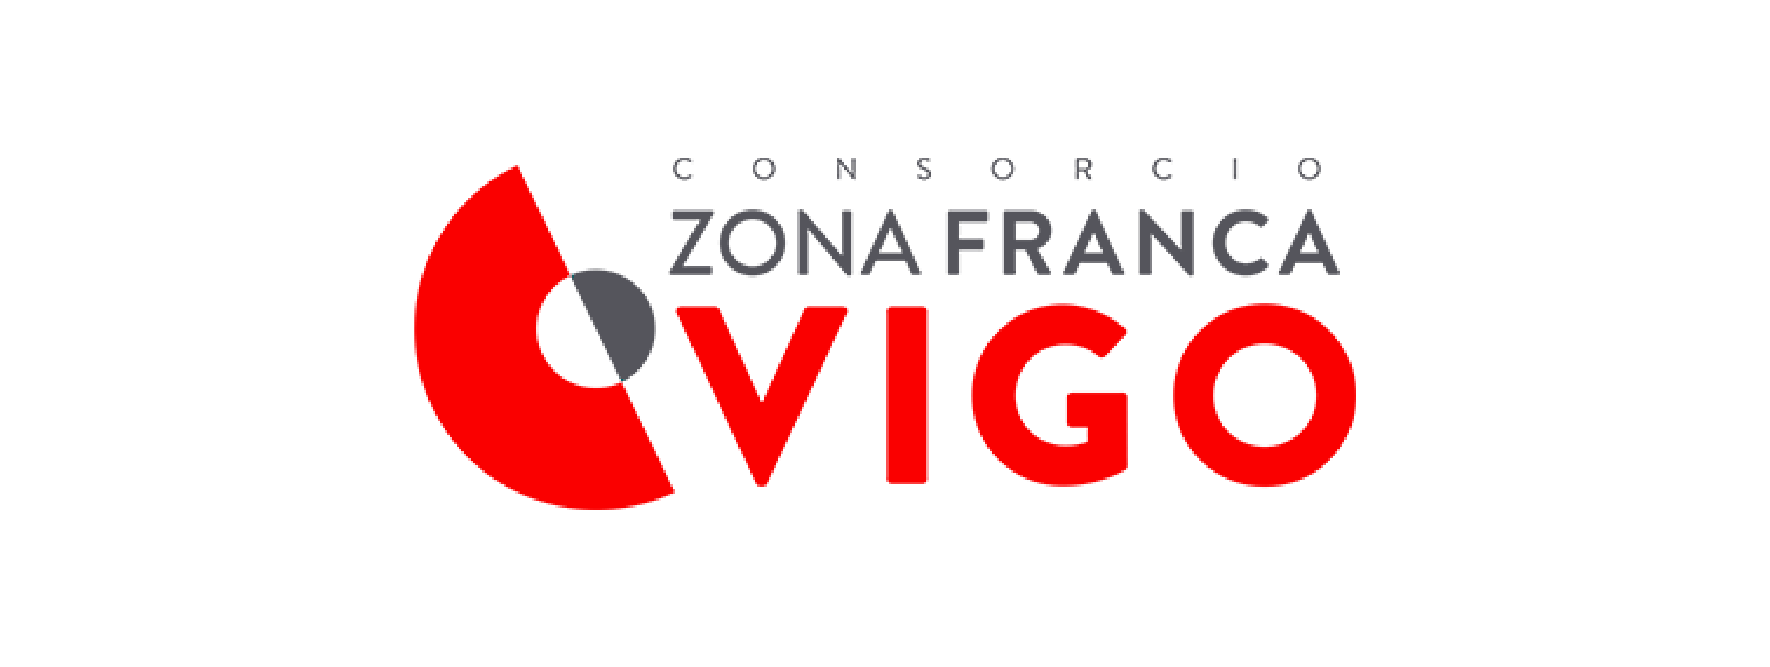 Zona Franca logo